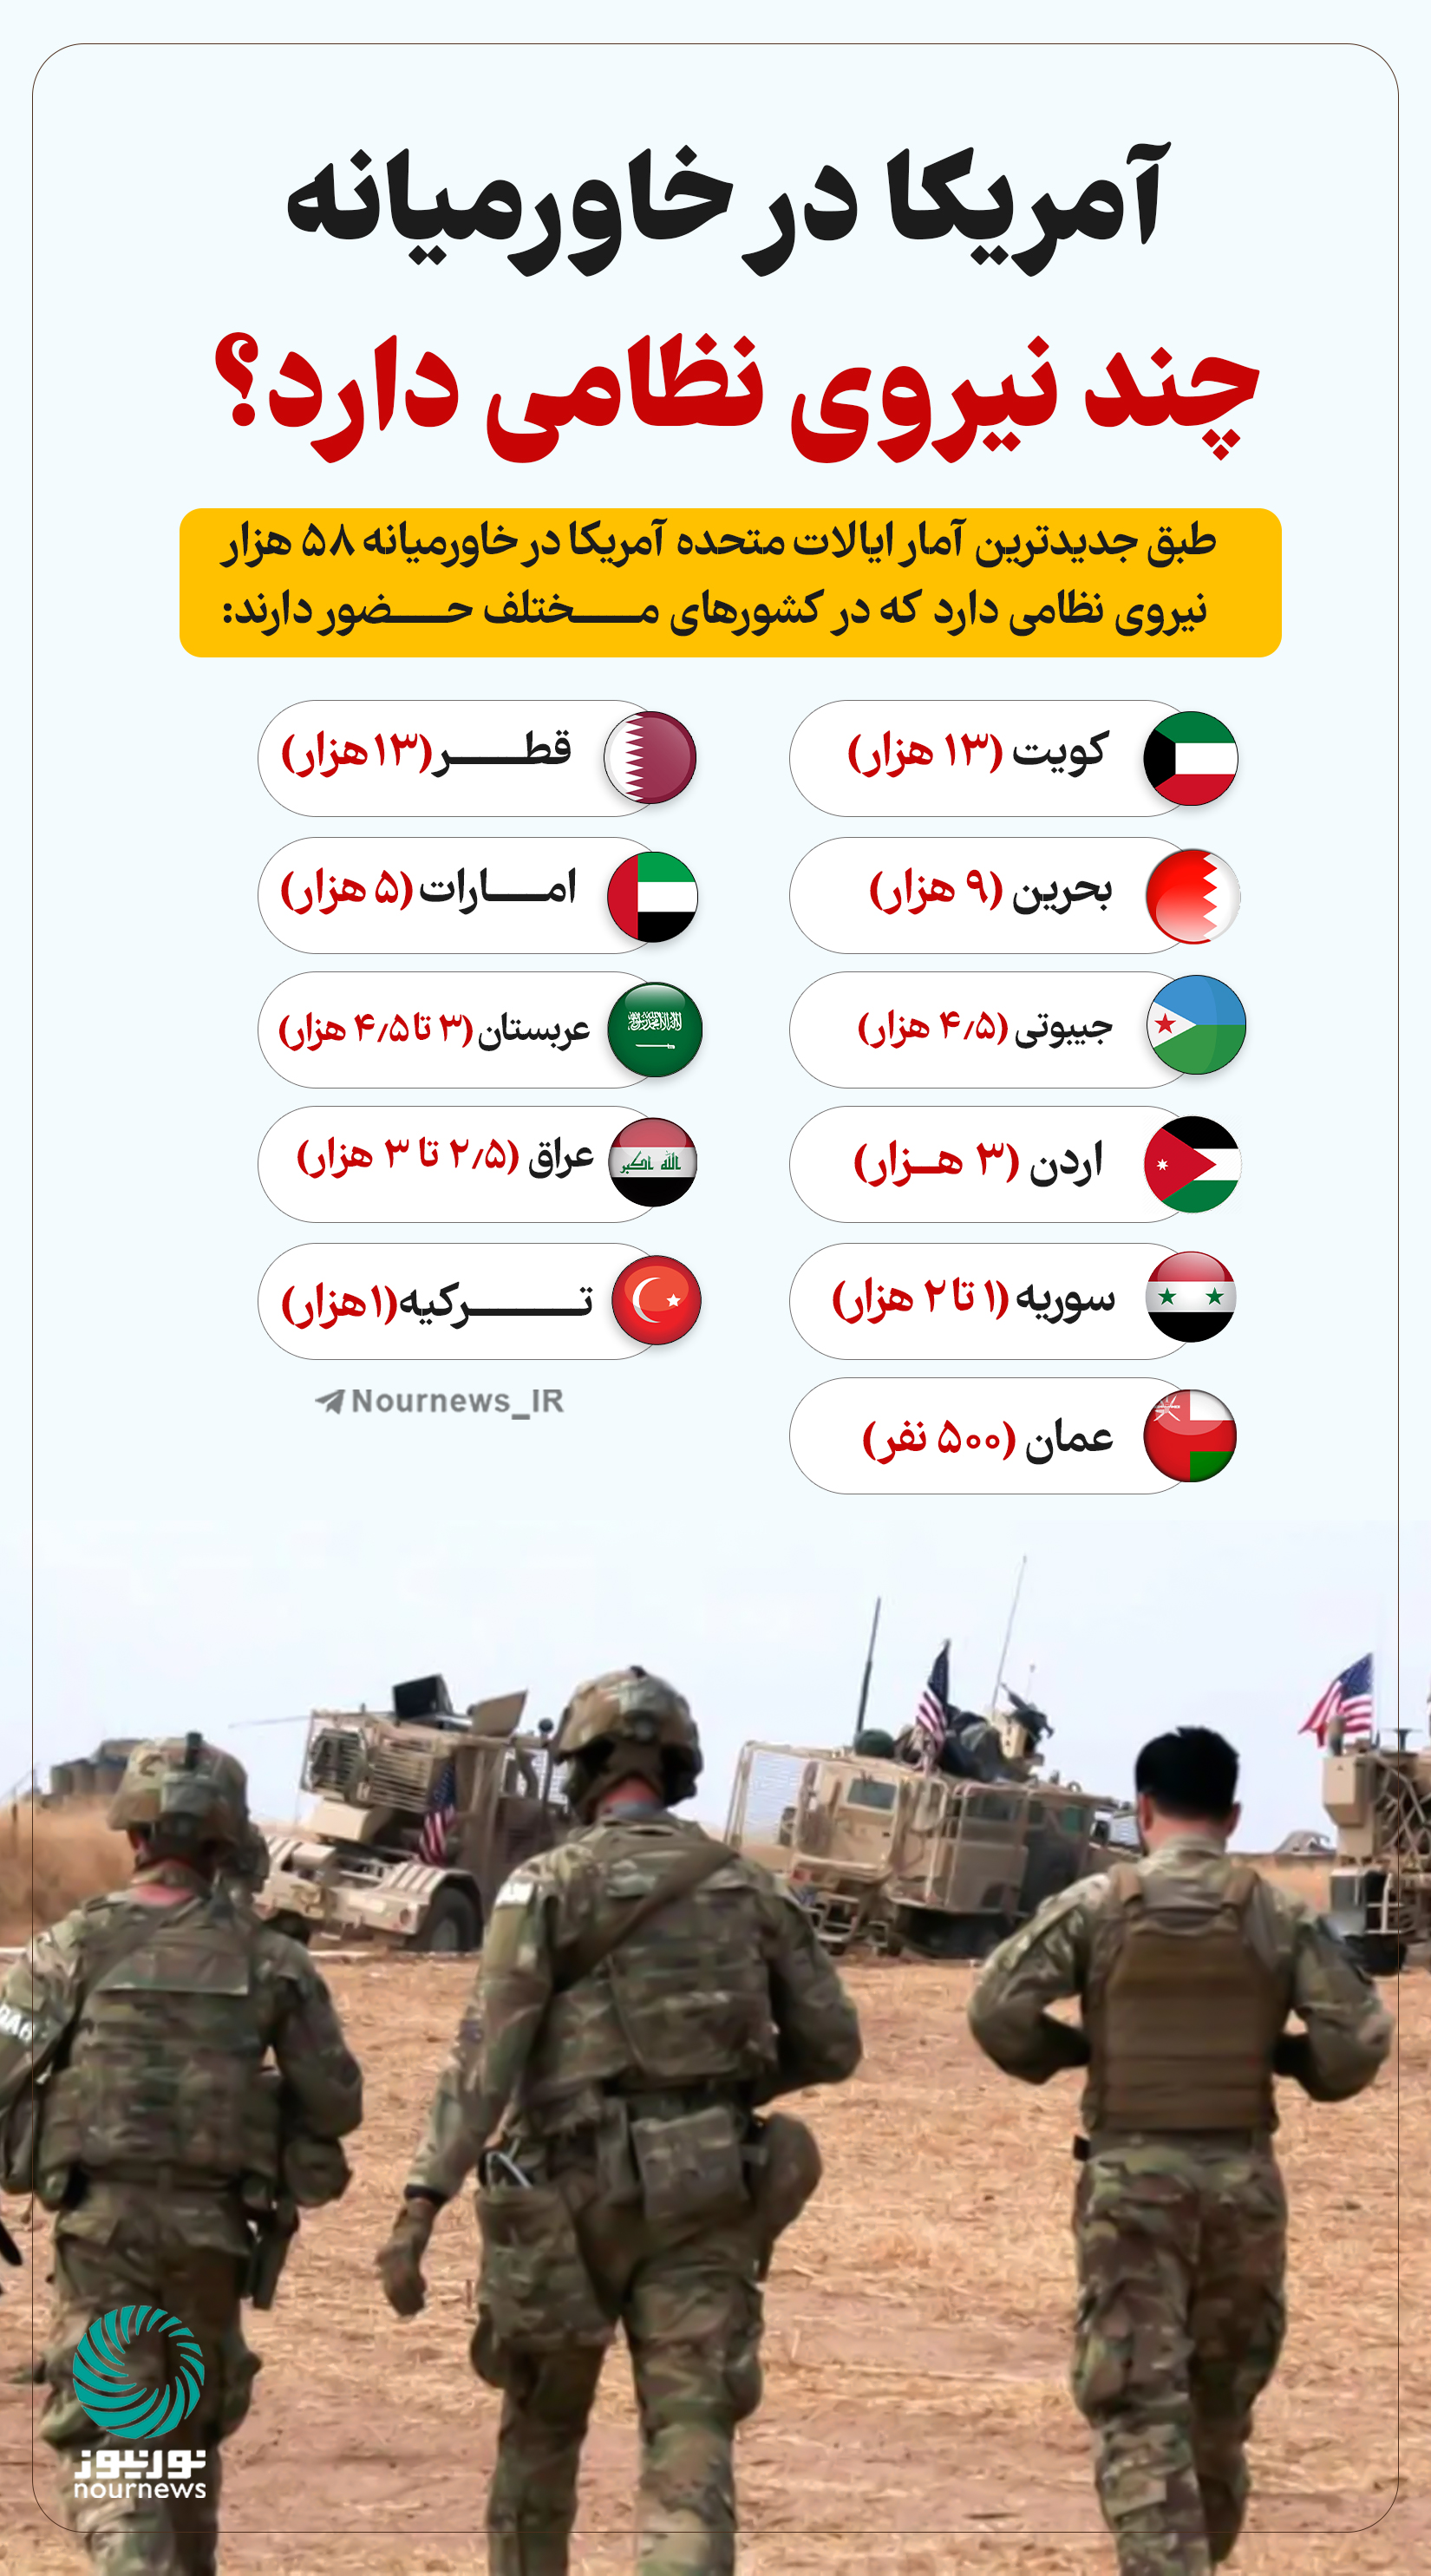 نوراینفو | آمریکا در خاورمیانه چند نیروی نظامی دارد؟